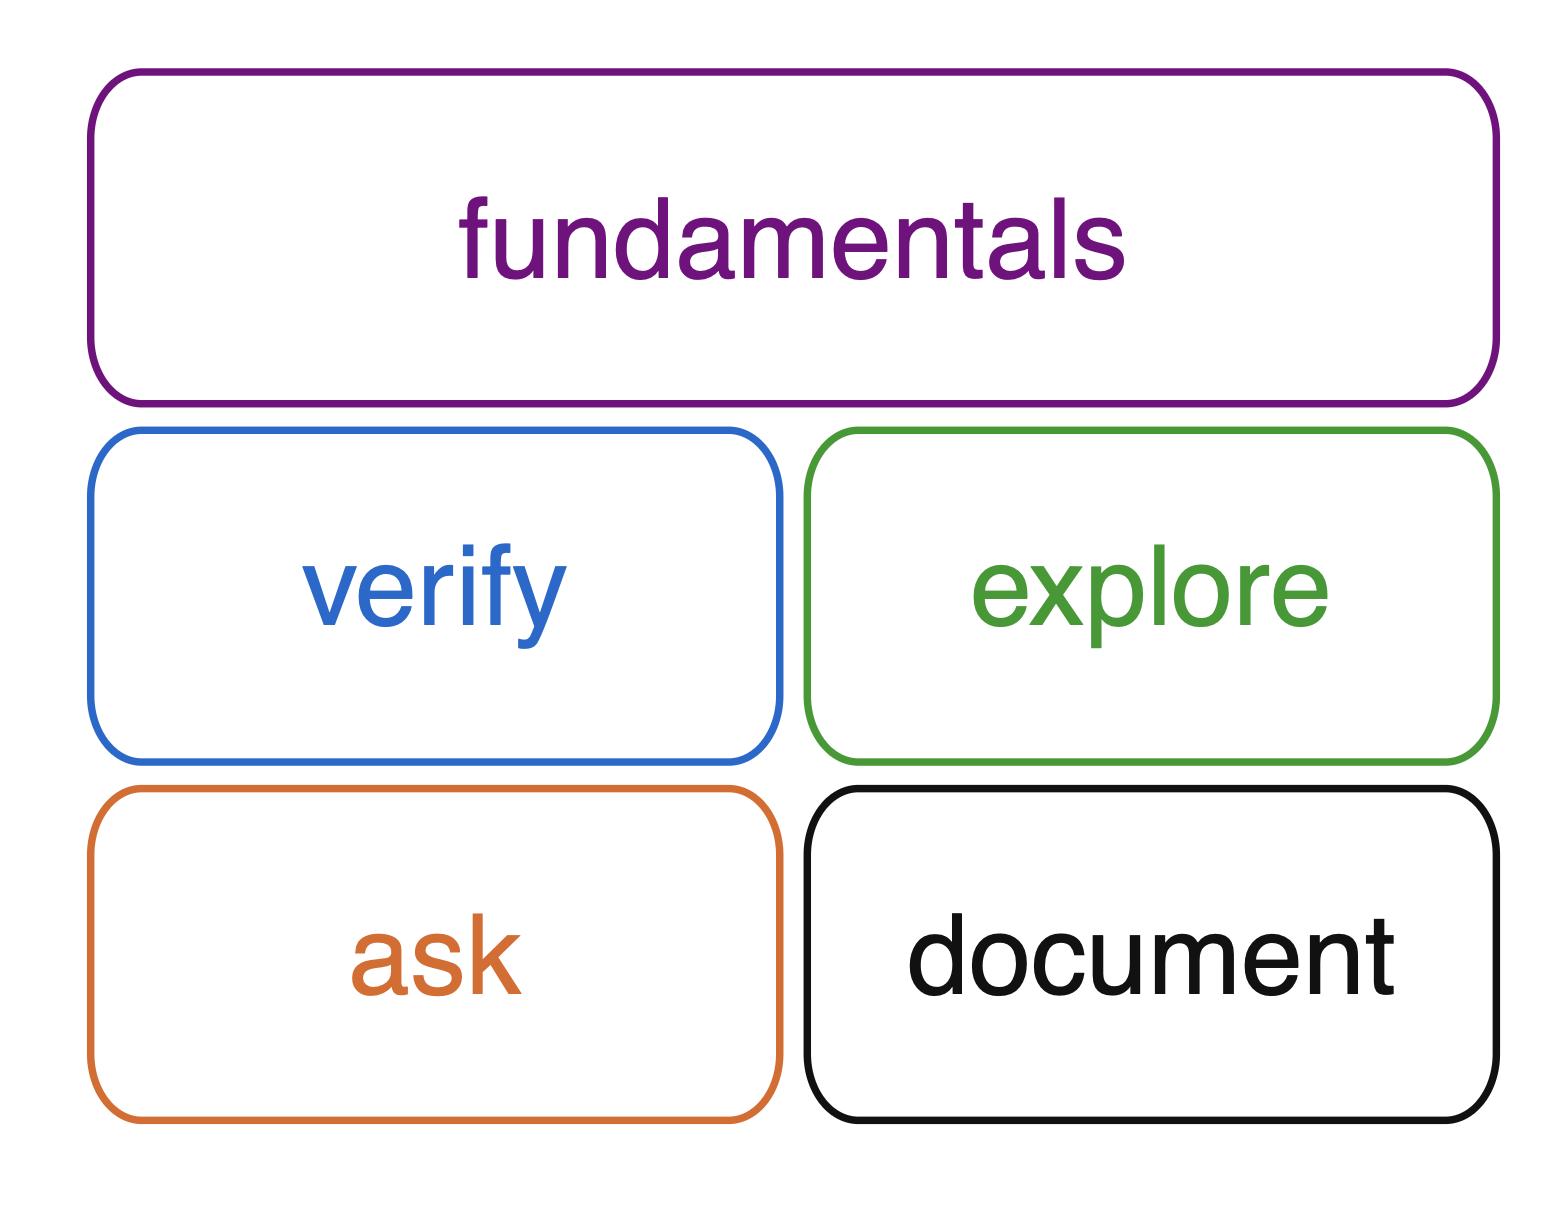 a framework consisting of fundamentals, verify, explore, ask, and document